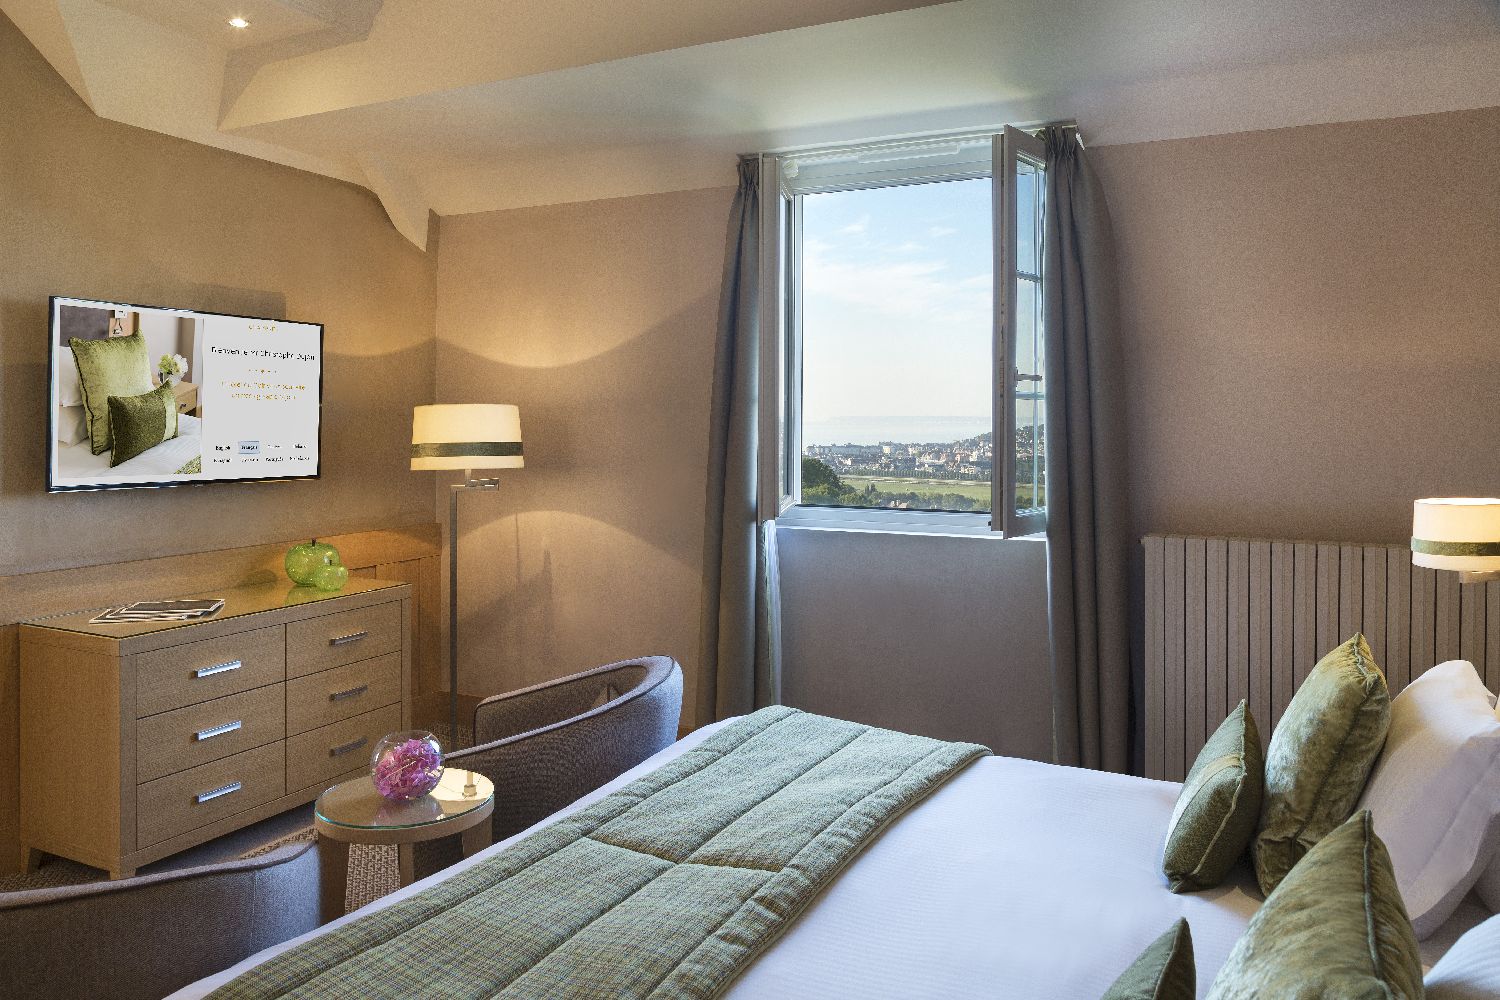 golf-expedition-golf-reizen-frankrijk-regio-normandië-hotel-du-golf-barriere-slaapkamer-met-tv-kast-en-uitzicht-op-omgeving.jpg.